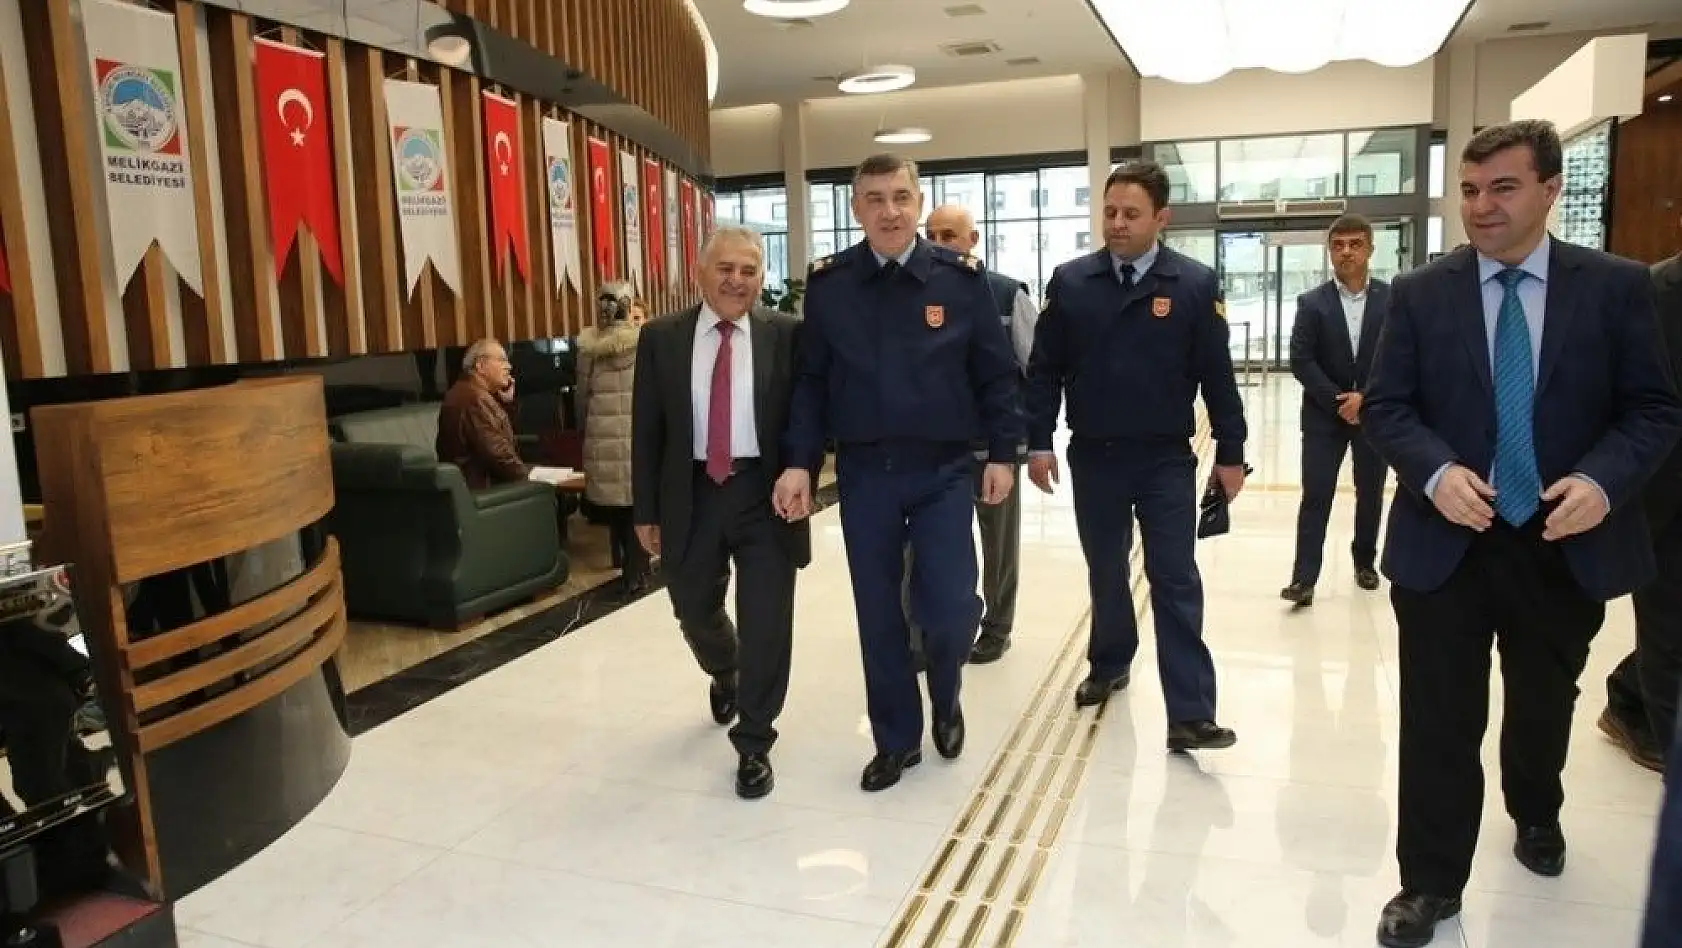 Hava Tuğgeneral Ercan Teke'den Memduh Büyükkılıç'a Nezaket Ziyareti
